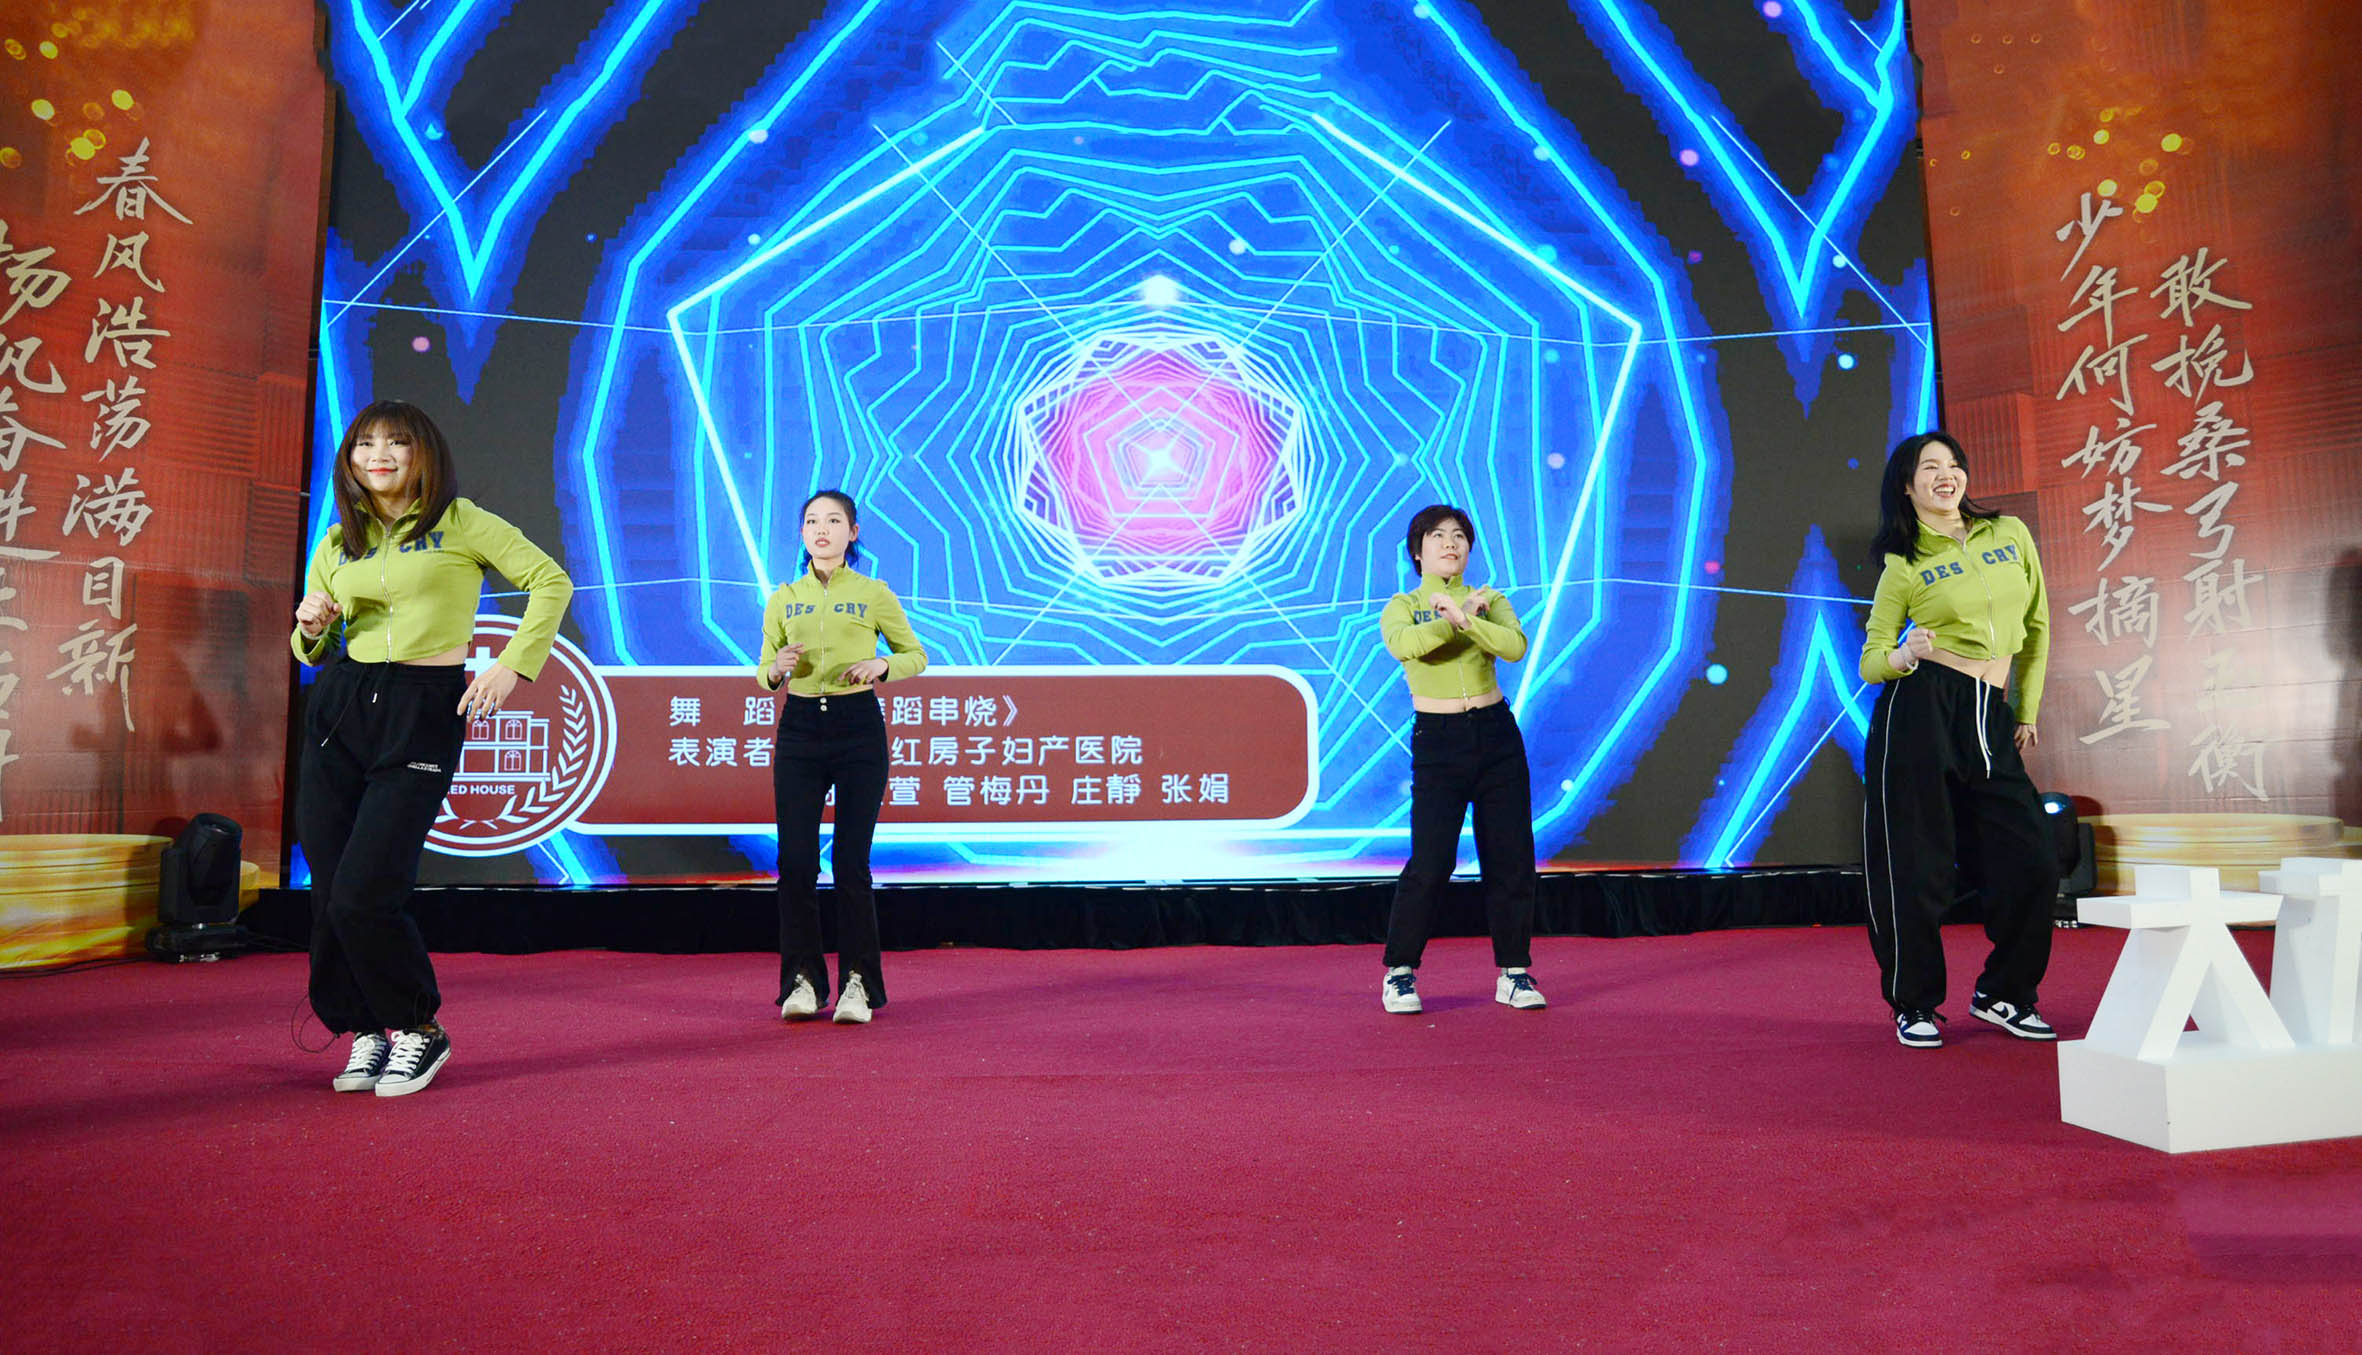 江阴红房子妇产医院员工表演舞蹈串烧